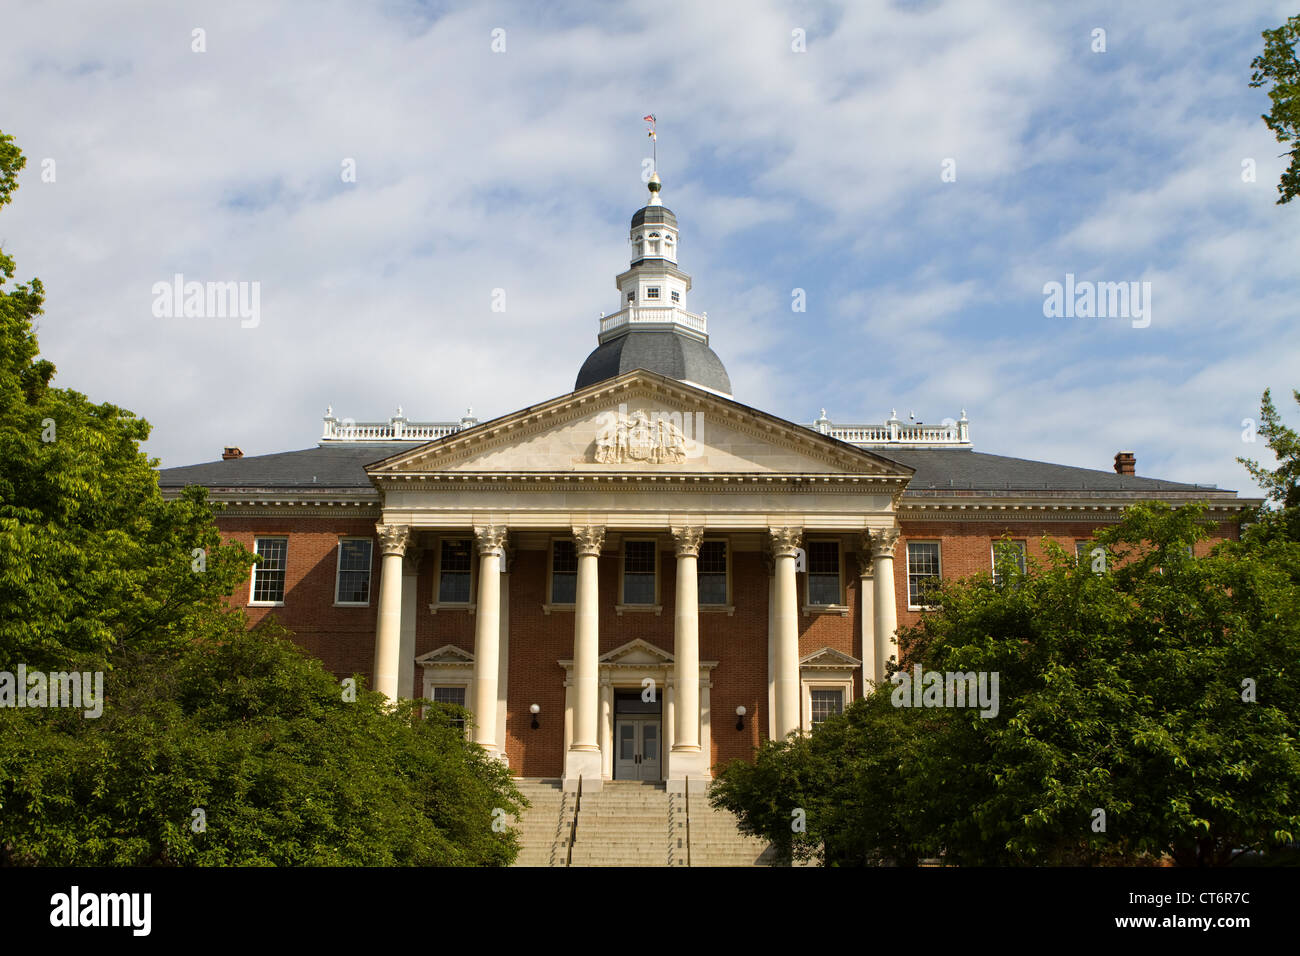 Maryland State Capitol Gebäude mit Kuppel vor einem bewölkten blauen Himmel mit den umliegenden Bäumen in Annapolis, Maryland, USA. Stockfoto